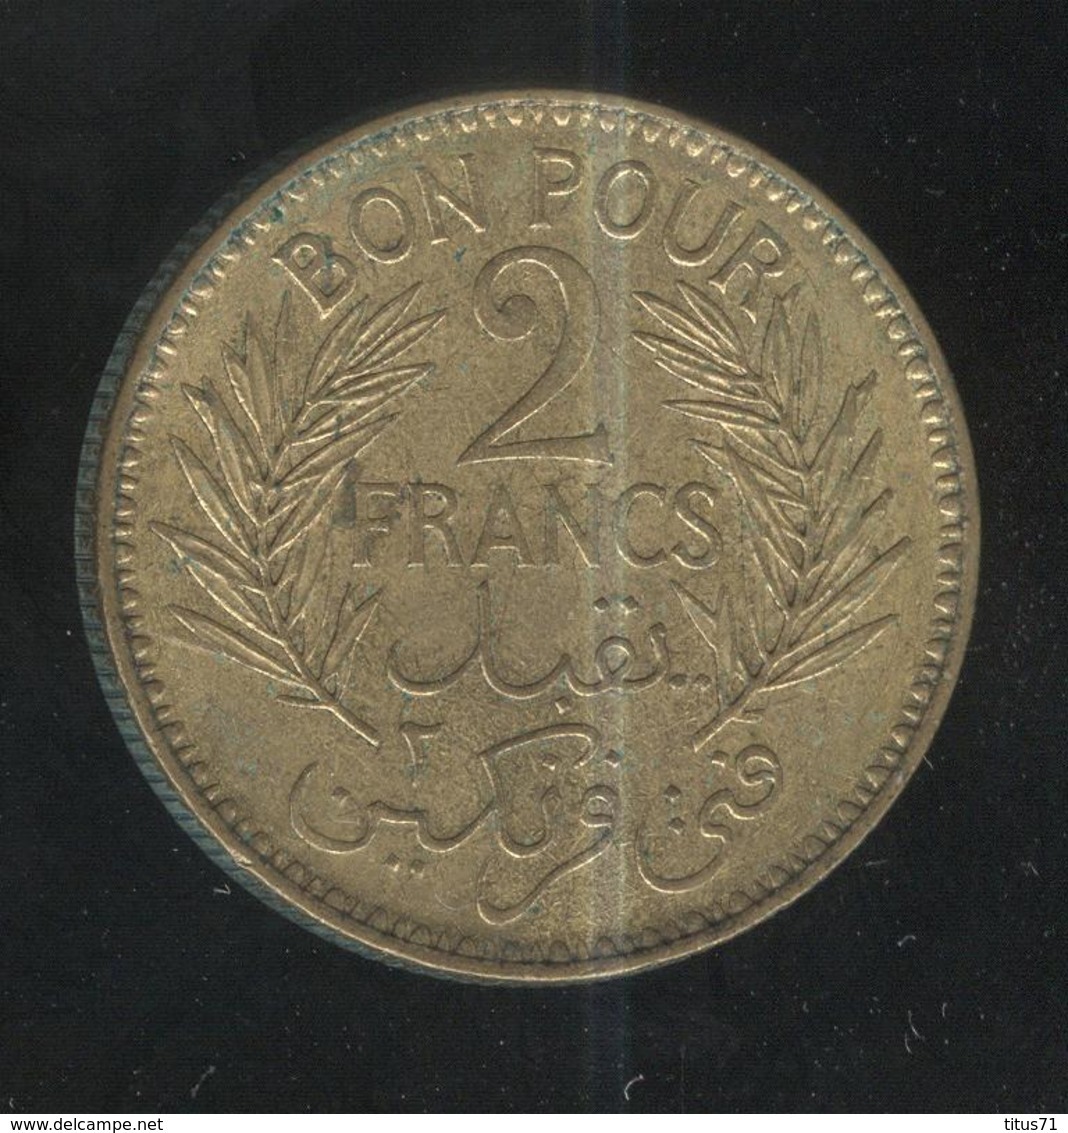 2 Francs Tunisie 1945 - Tunisia